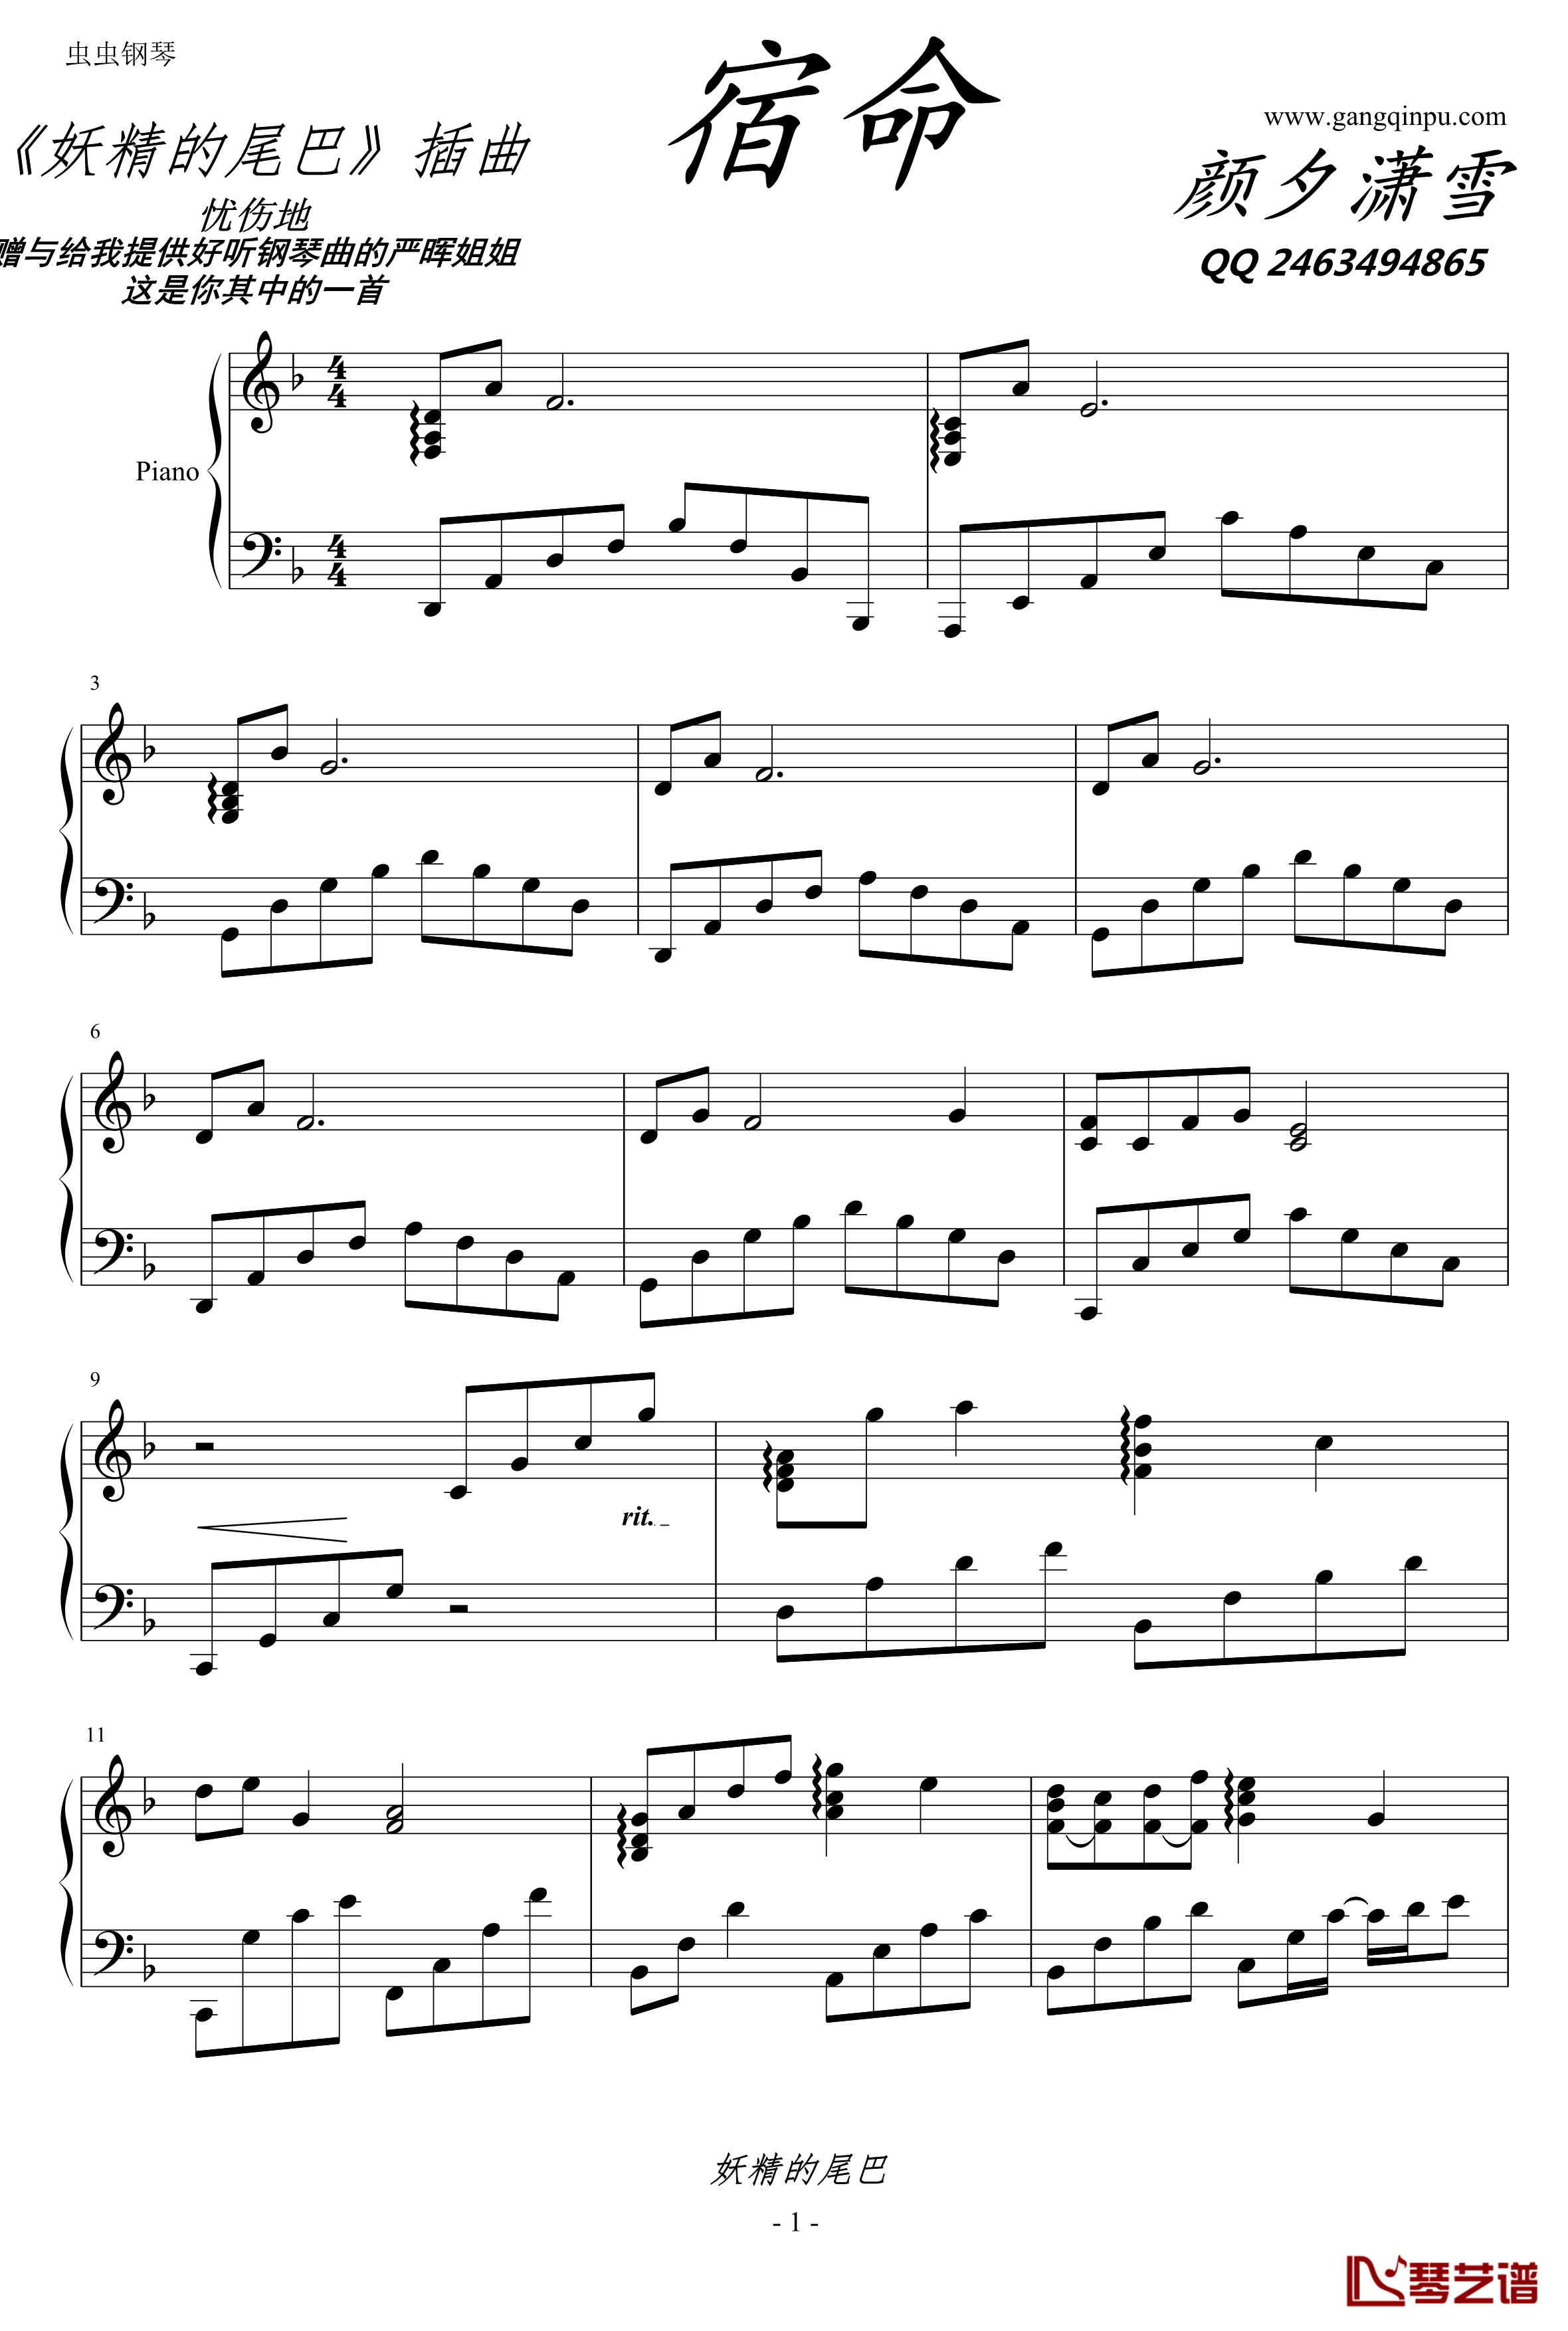 宿命钢琴谱-独奏钢琴曲-妖精的尾巴1